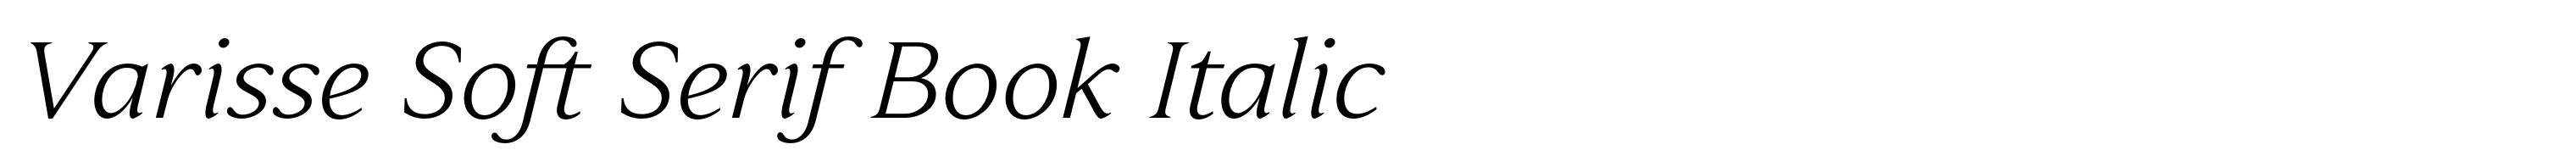 Varisse Soft Serif Book Italic